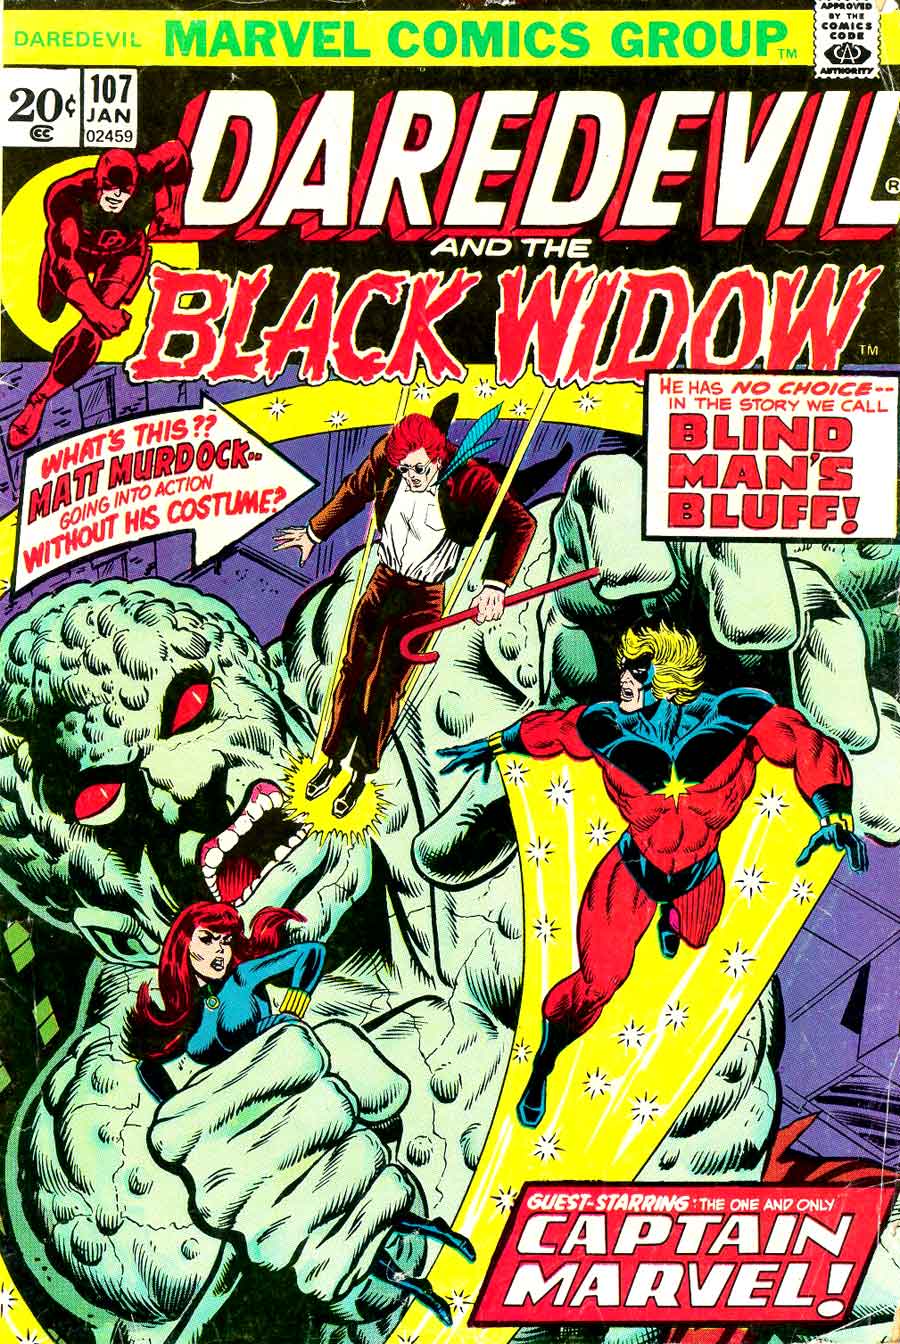 Daredevil v1 #107 marvel comic book cover art by Jim Starlin